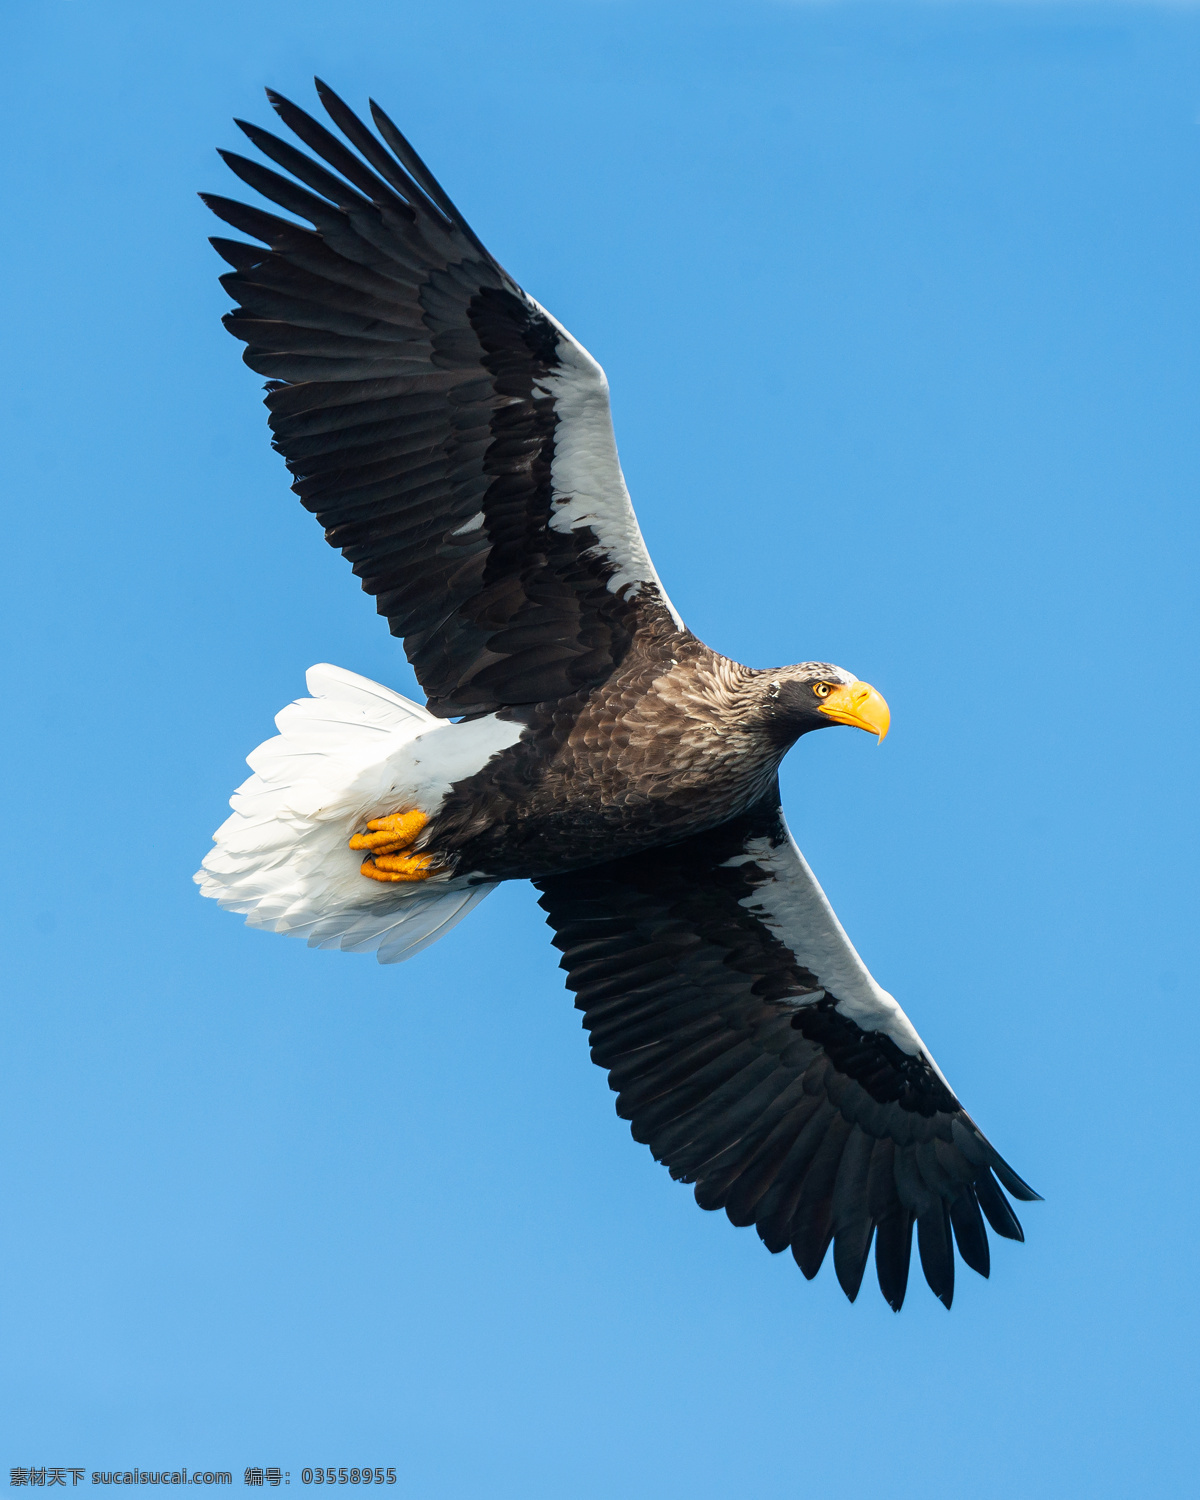 飞翔 白 尾 鹰 摄影图片 蓝色的 天空 雄鹰 高飞 飞翔的 白尾鹰 昆虫花鸟 生物世界 鸟类